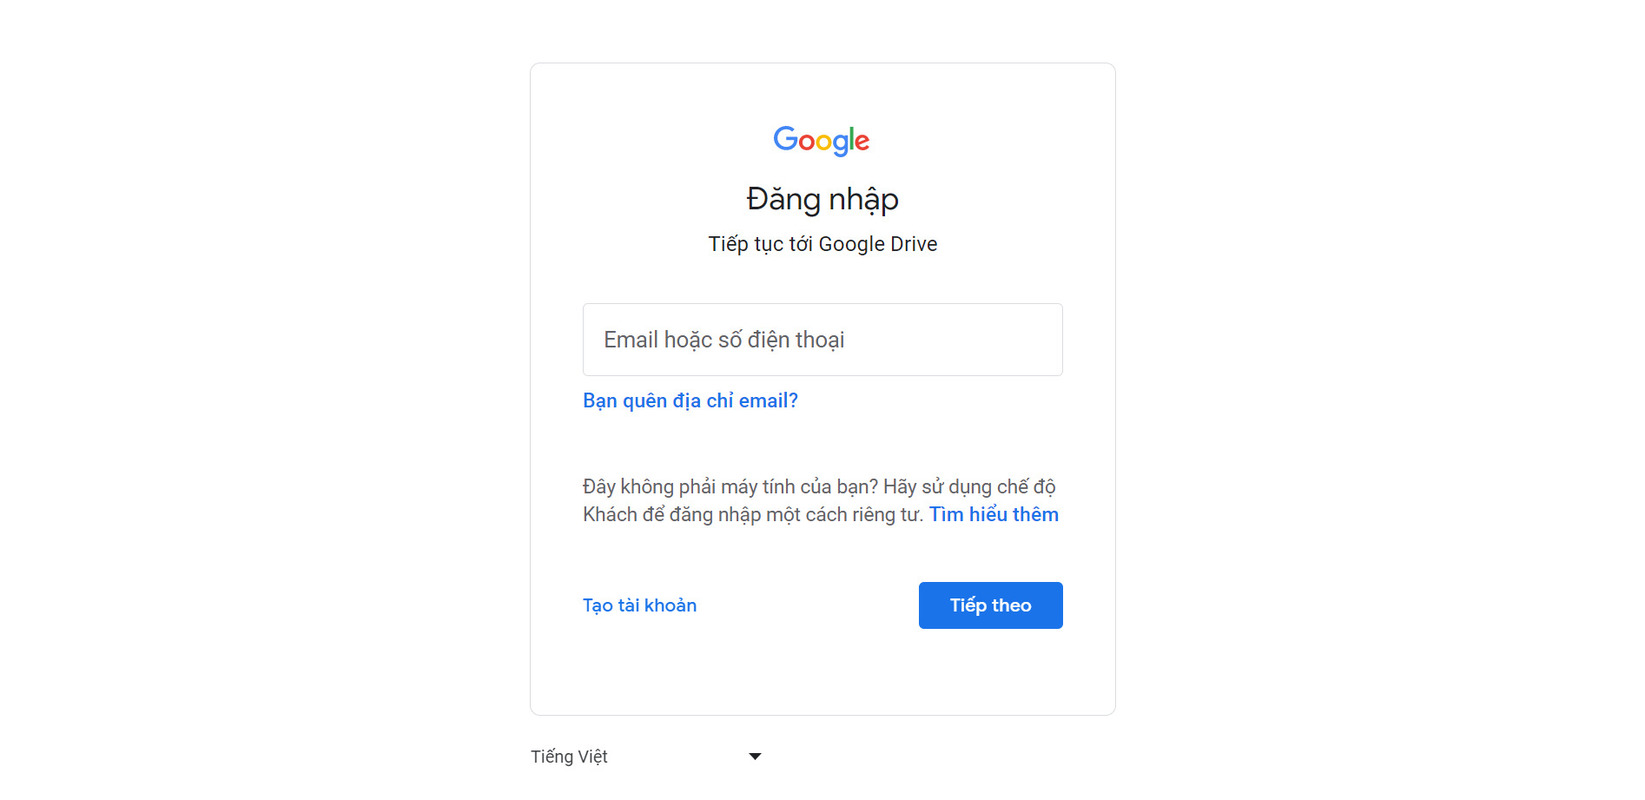 Click chọn nút “Tạo tài khoản” để có thể sử dụng Google Drive nếu bạn chưa có tài khoản nào  